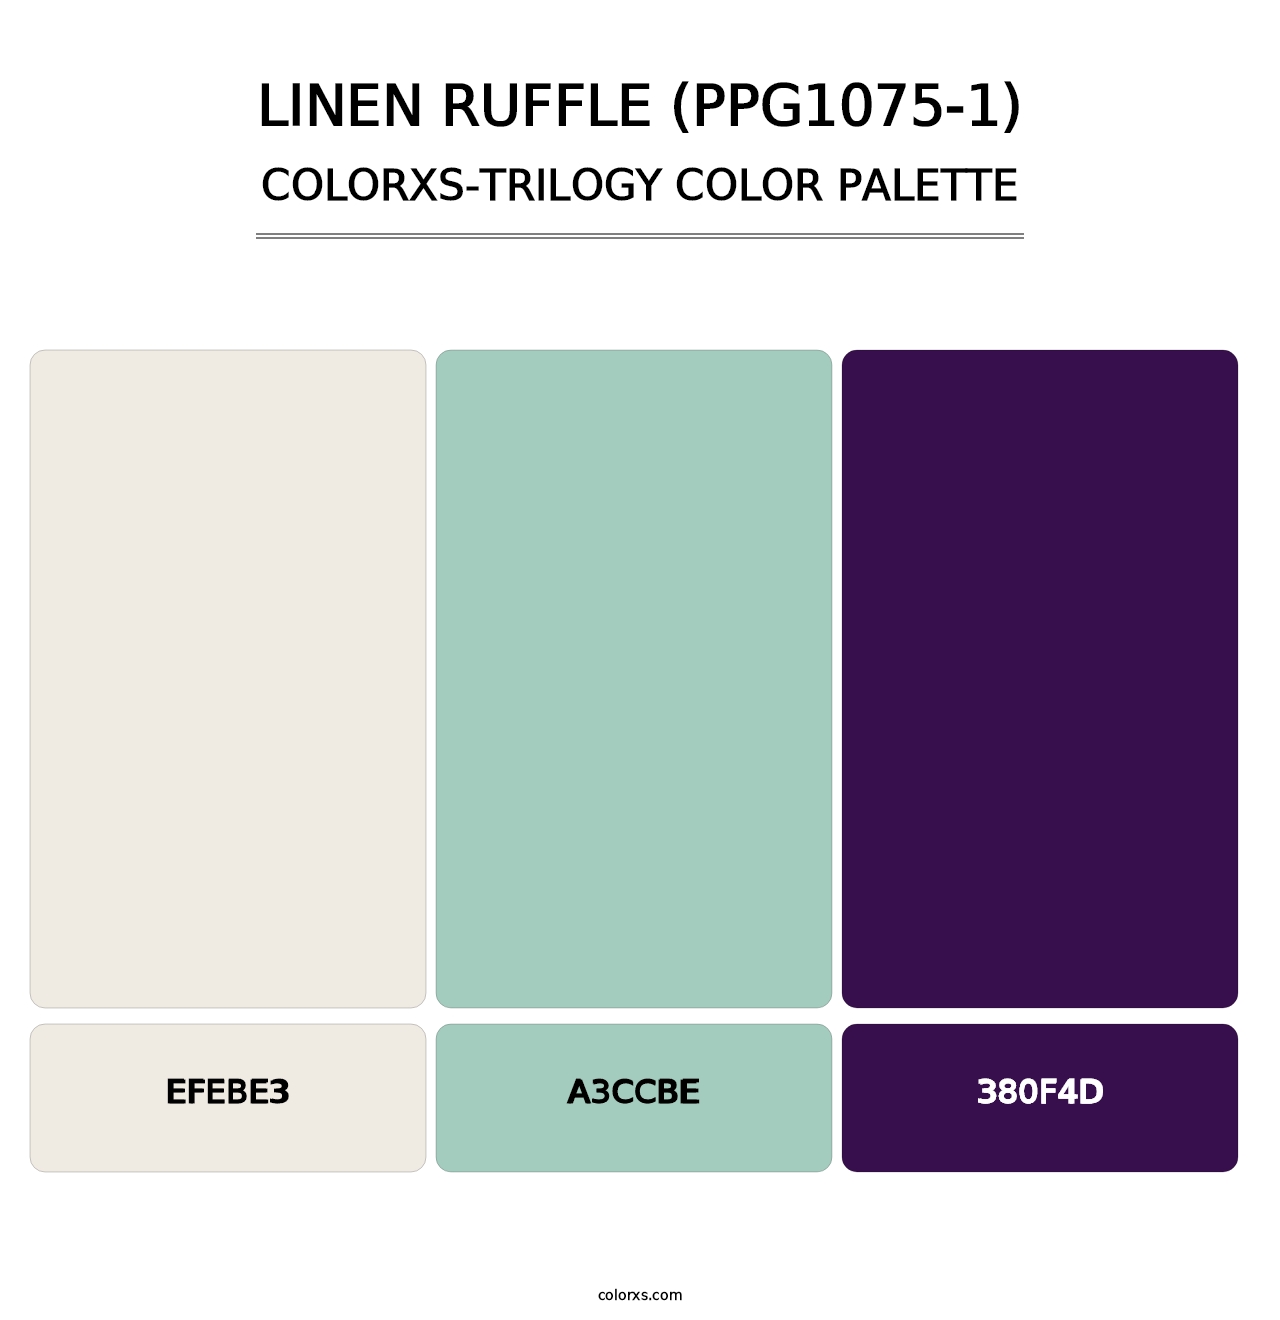 Linen Ruffle (PPG1075-1) - Colorxs Trilogy Palette